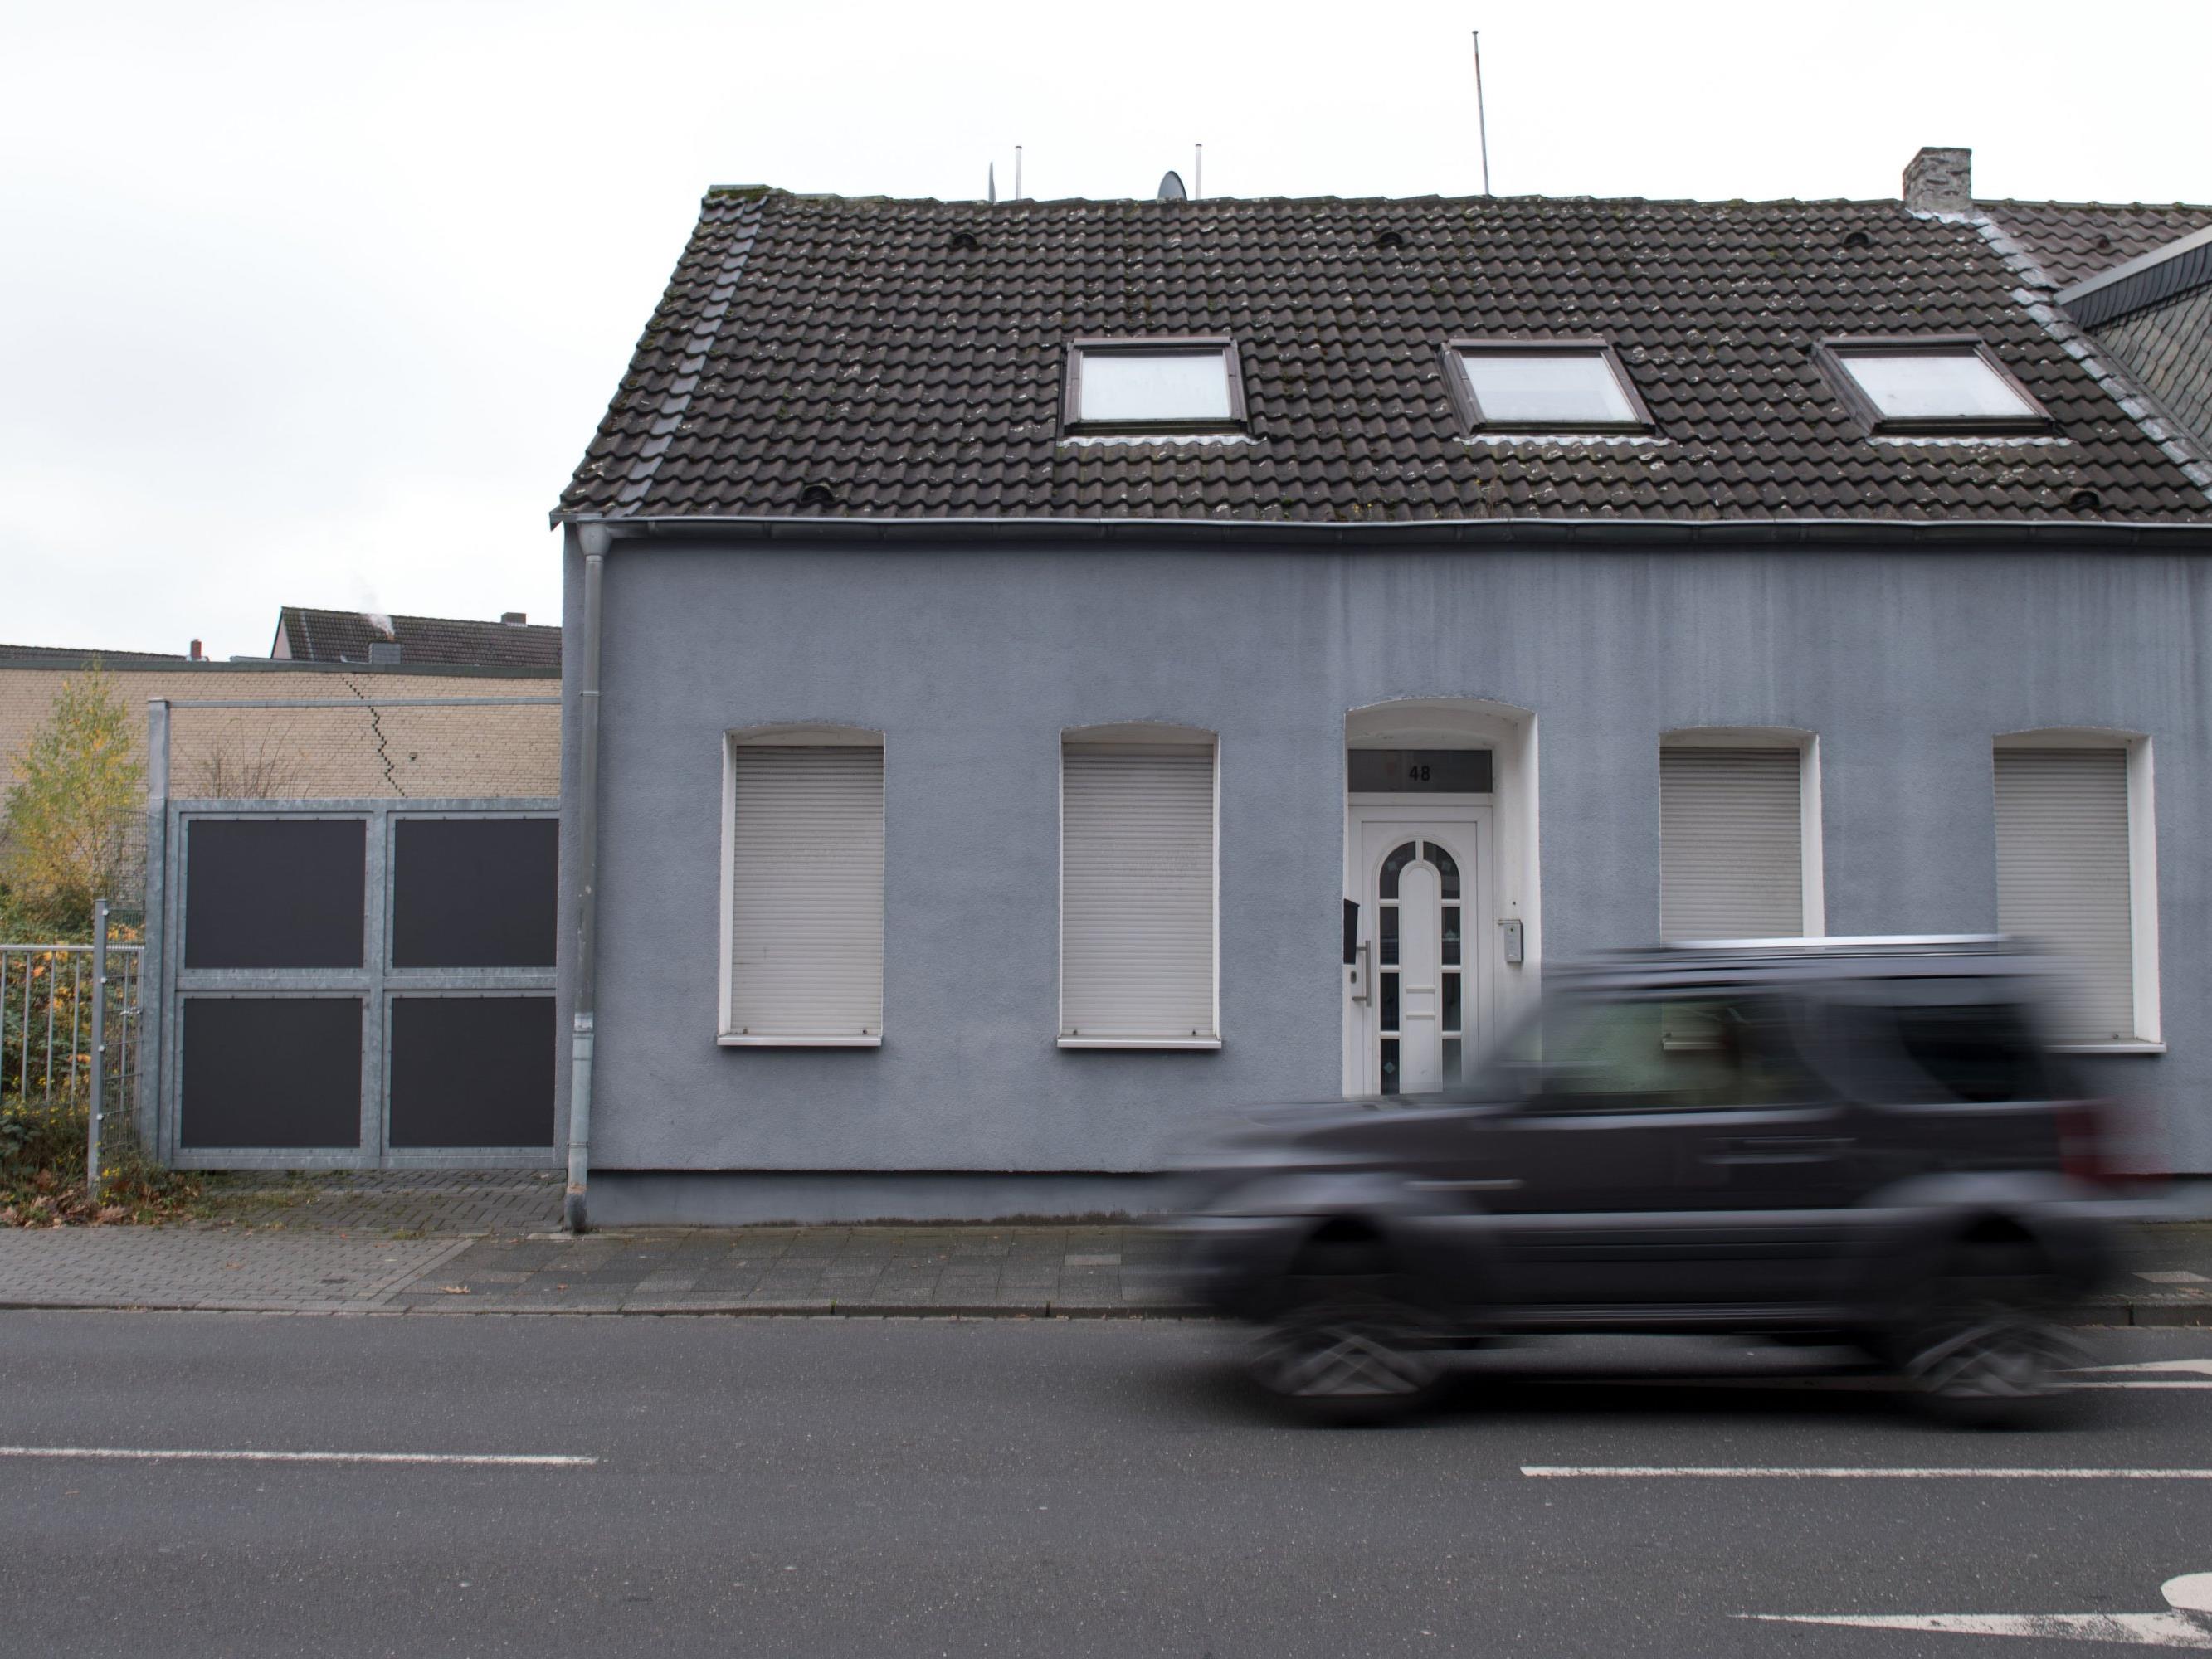 In diesem Haus im nordrhein-westfälischen Tönisforst soll der Terrorverdächtige Abu Walaa gewohnt haben.